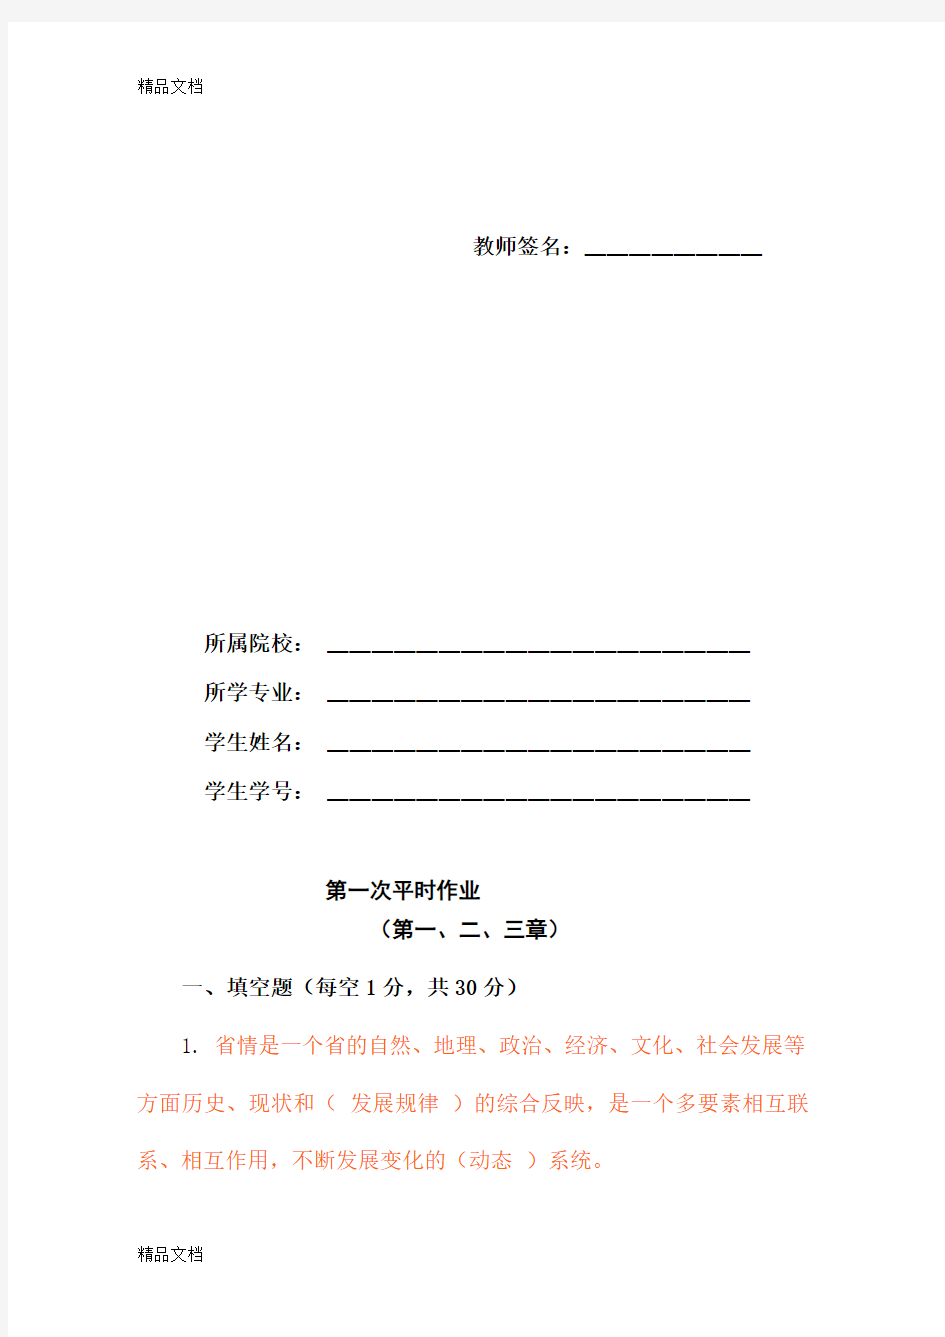 贵州省情(地域文化)第四版平时作业答案(1)说课材料